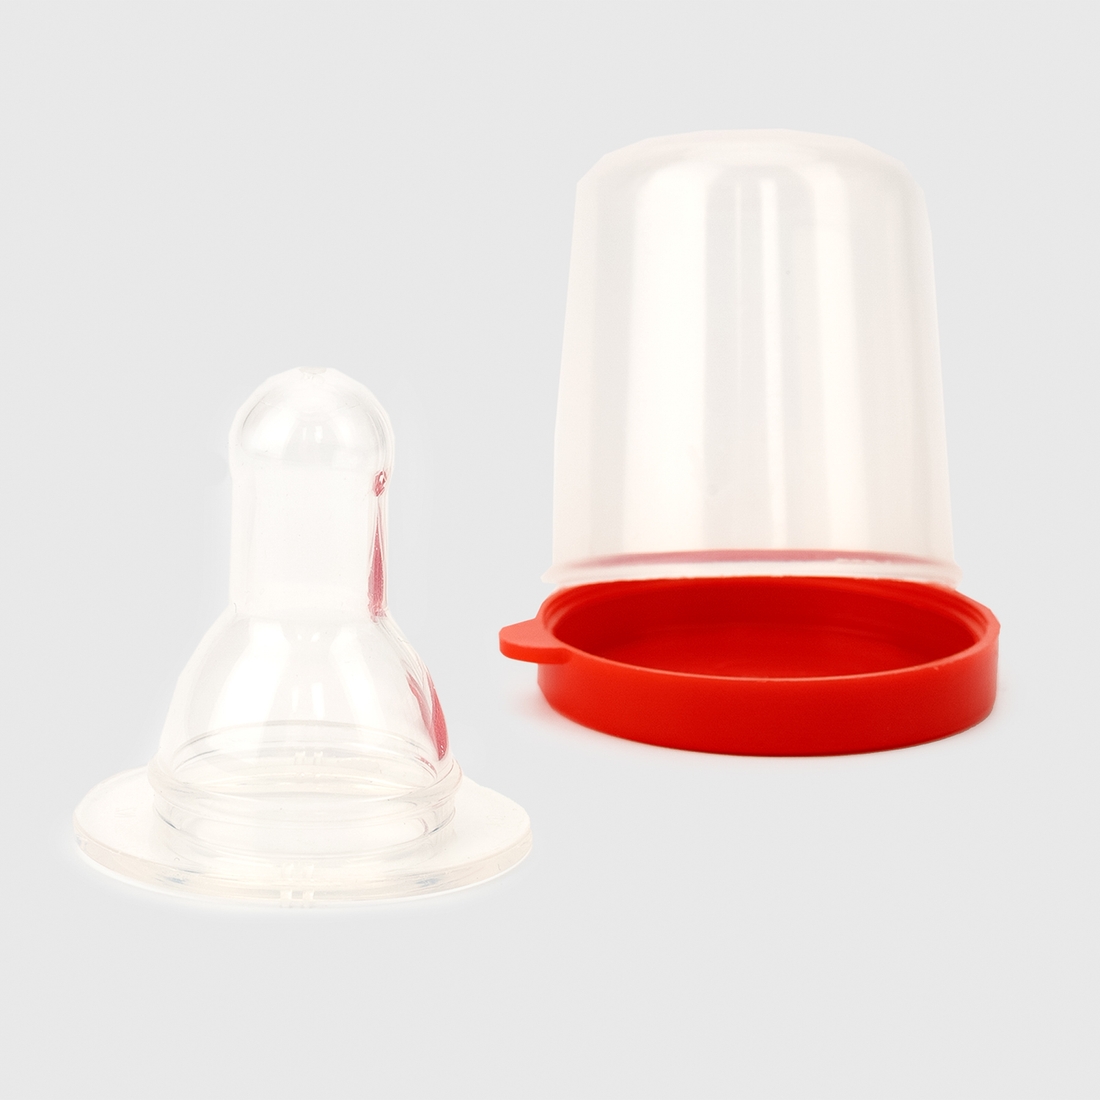 Фото Соска силіконова кругла Lindo Pk 051/L для пляшок із стандартним горлом Червоний (2000990122476)